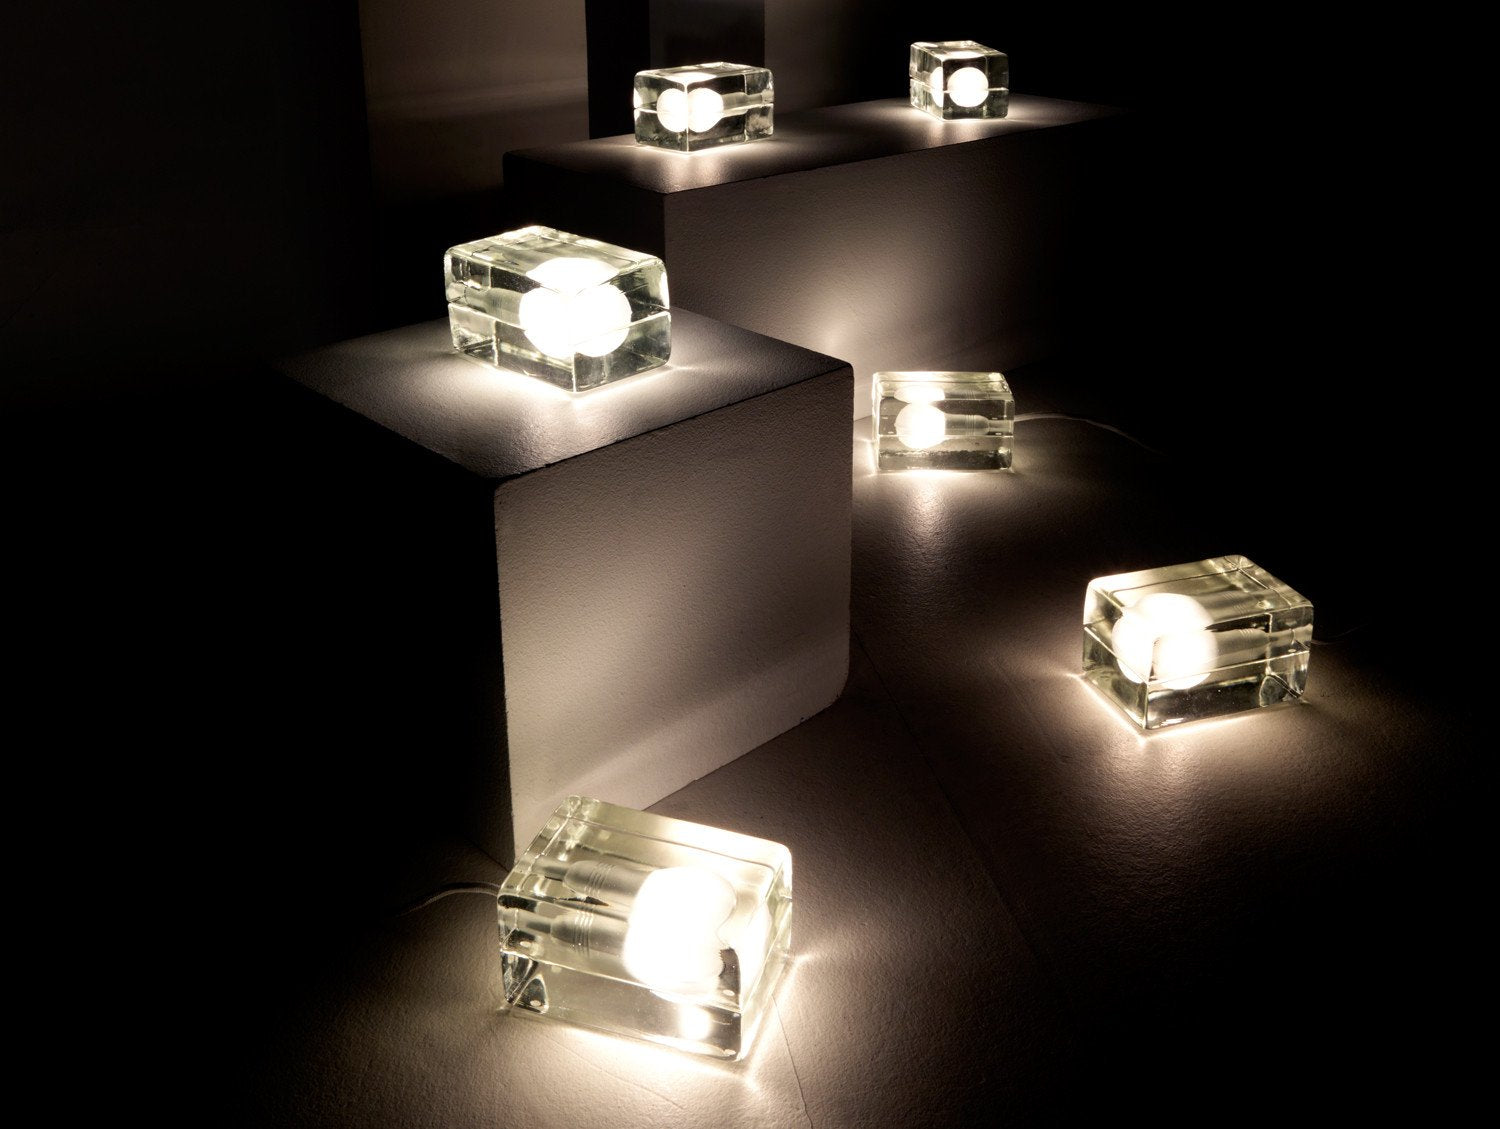 ブロック ランプ by デザイン ハウス ストックホルム – Really Well Made